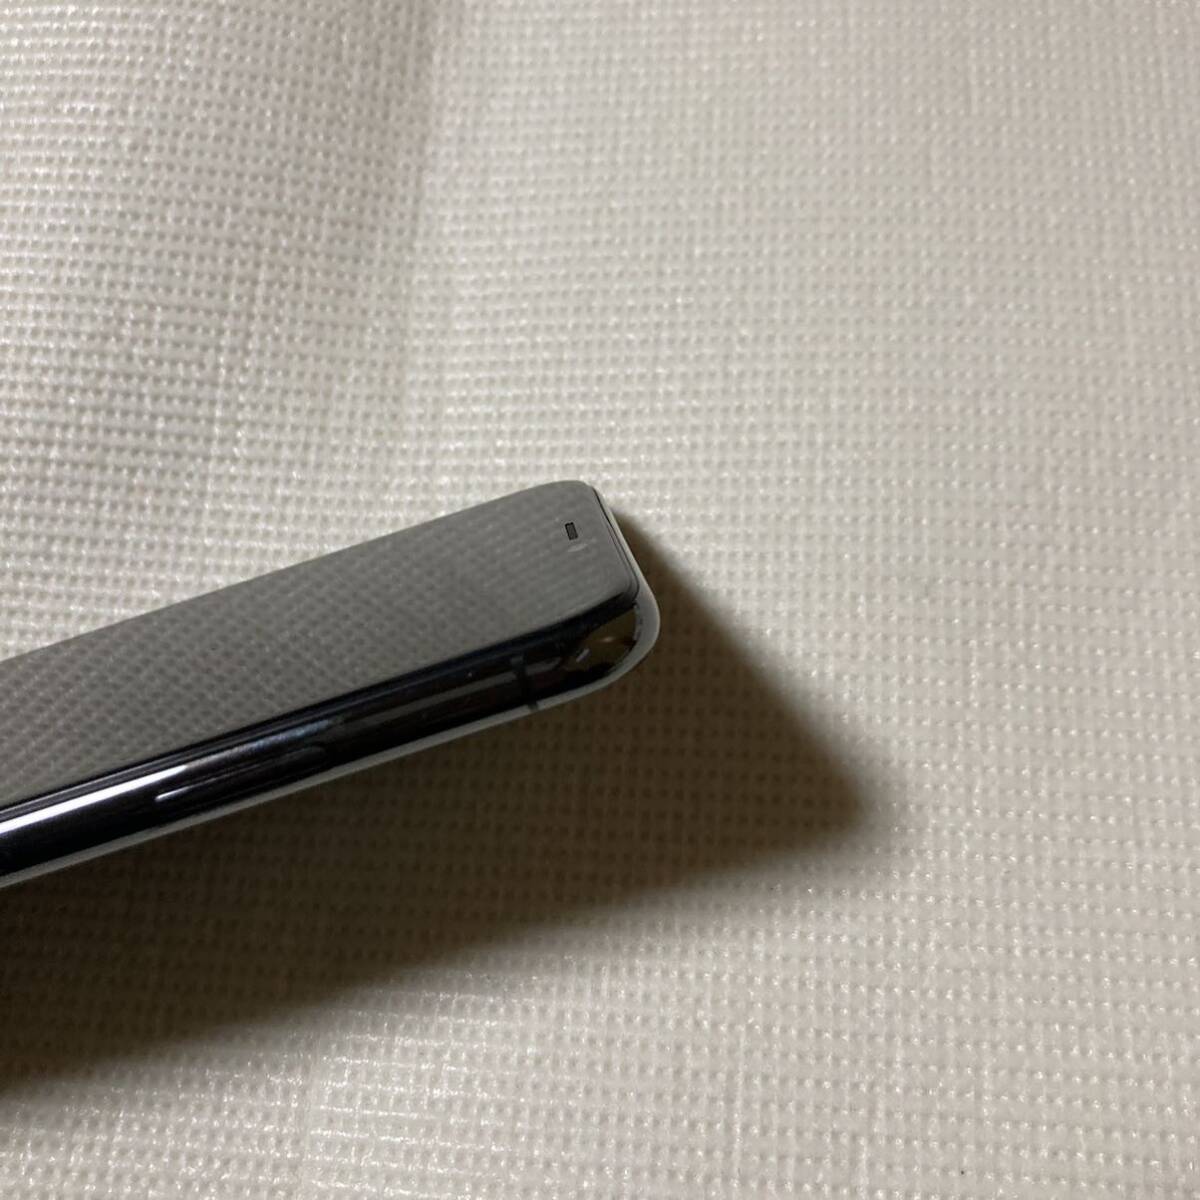 送料無料 超美品 SIMフリー iPhoneX 256GB スペースグレー バッテリー最大容量100% SIMロック解除済 付属品